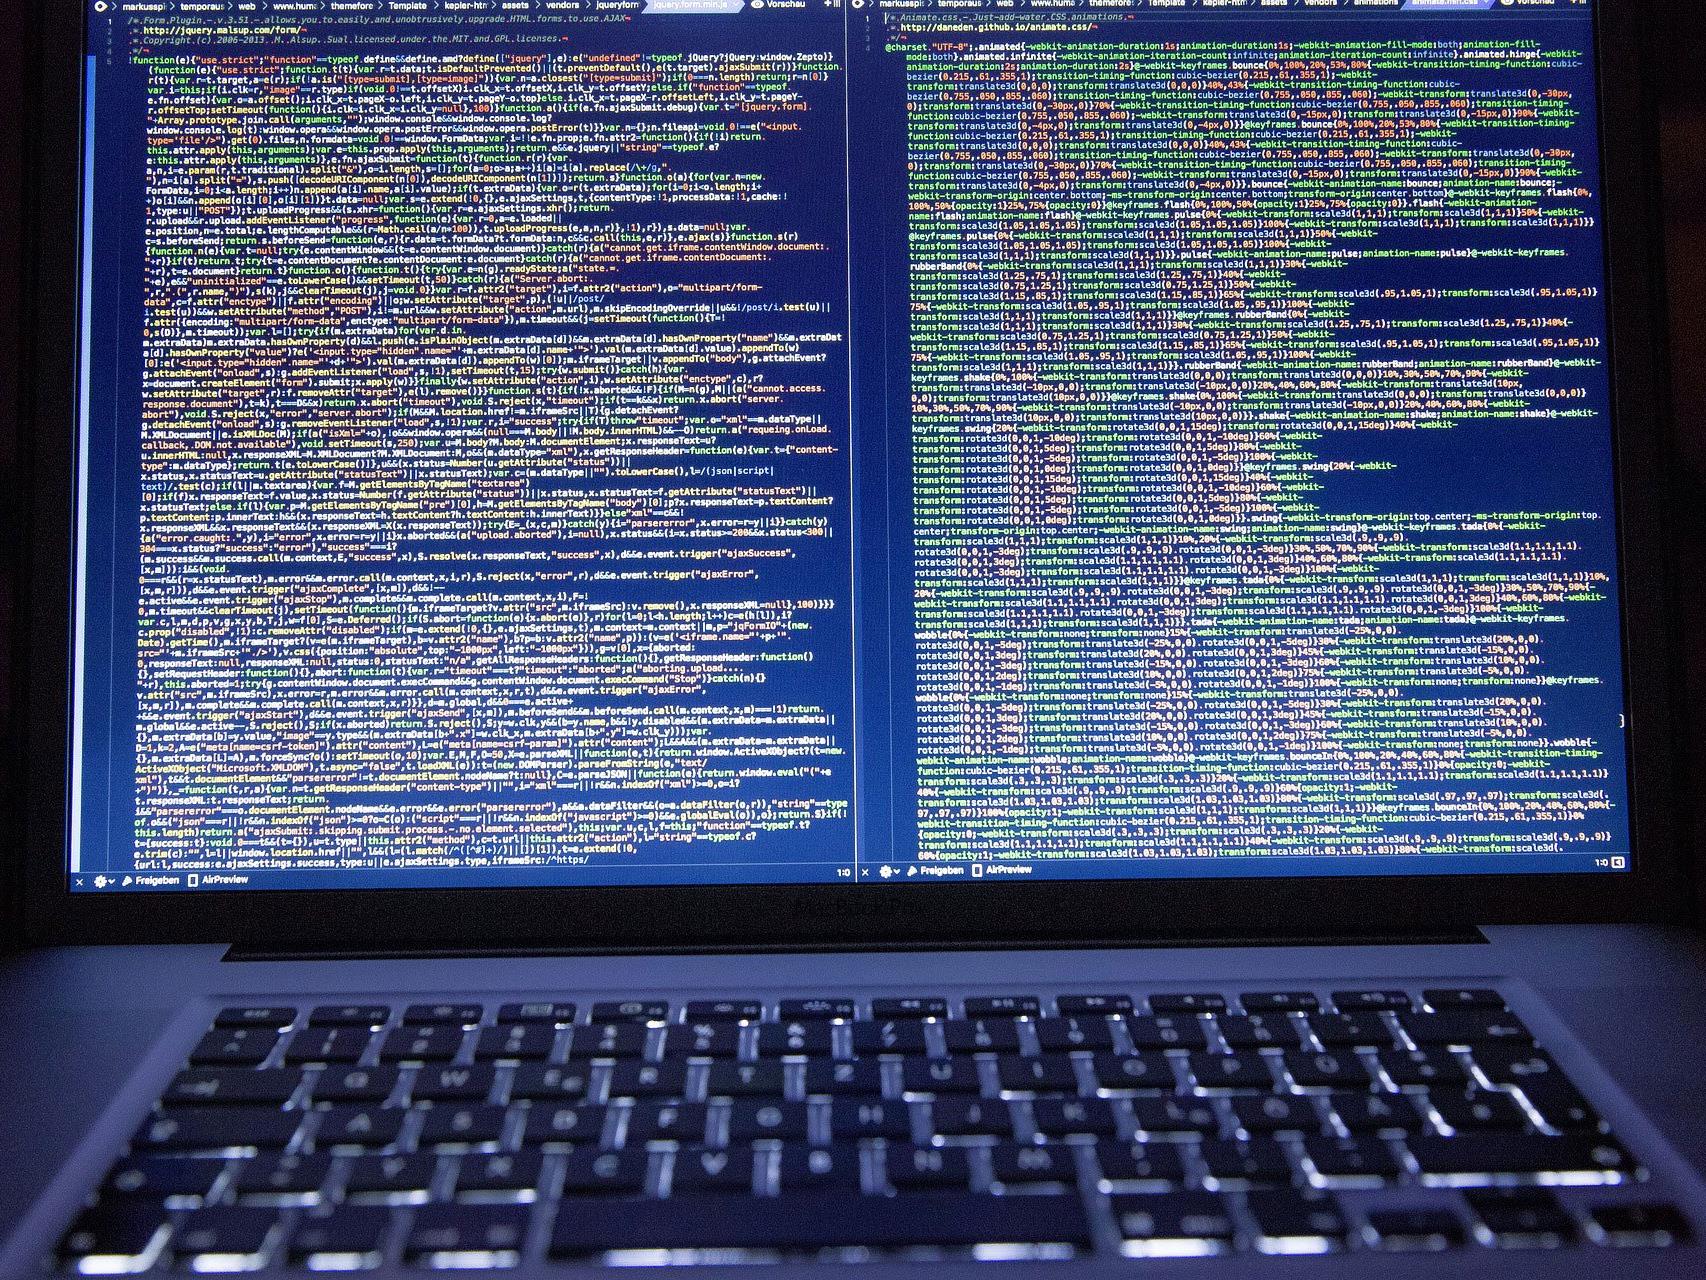 Das Ministerium nach dem Hacker-Angriff auf die Bundesheer-Website: "Systeme gut geschützt"